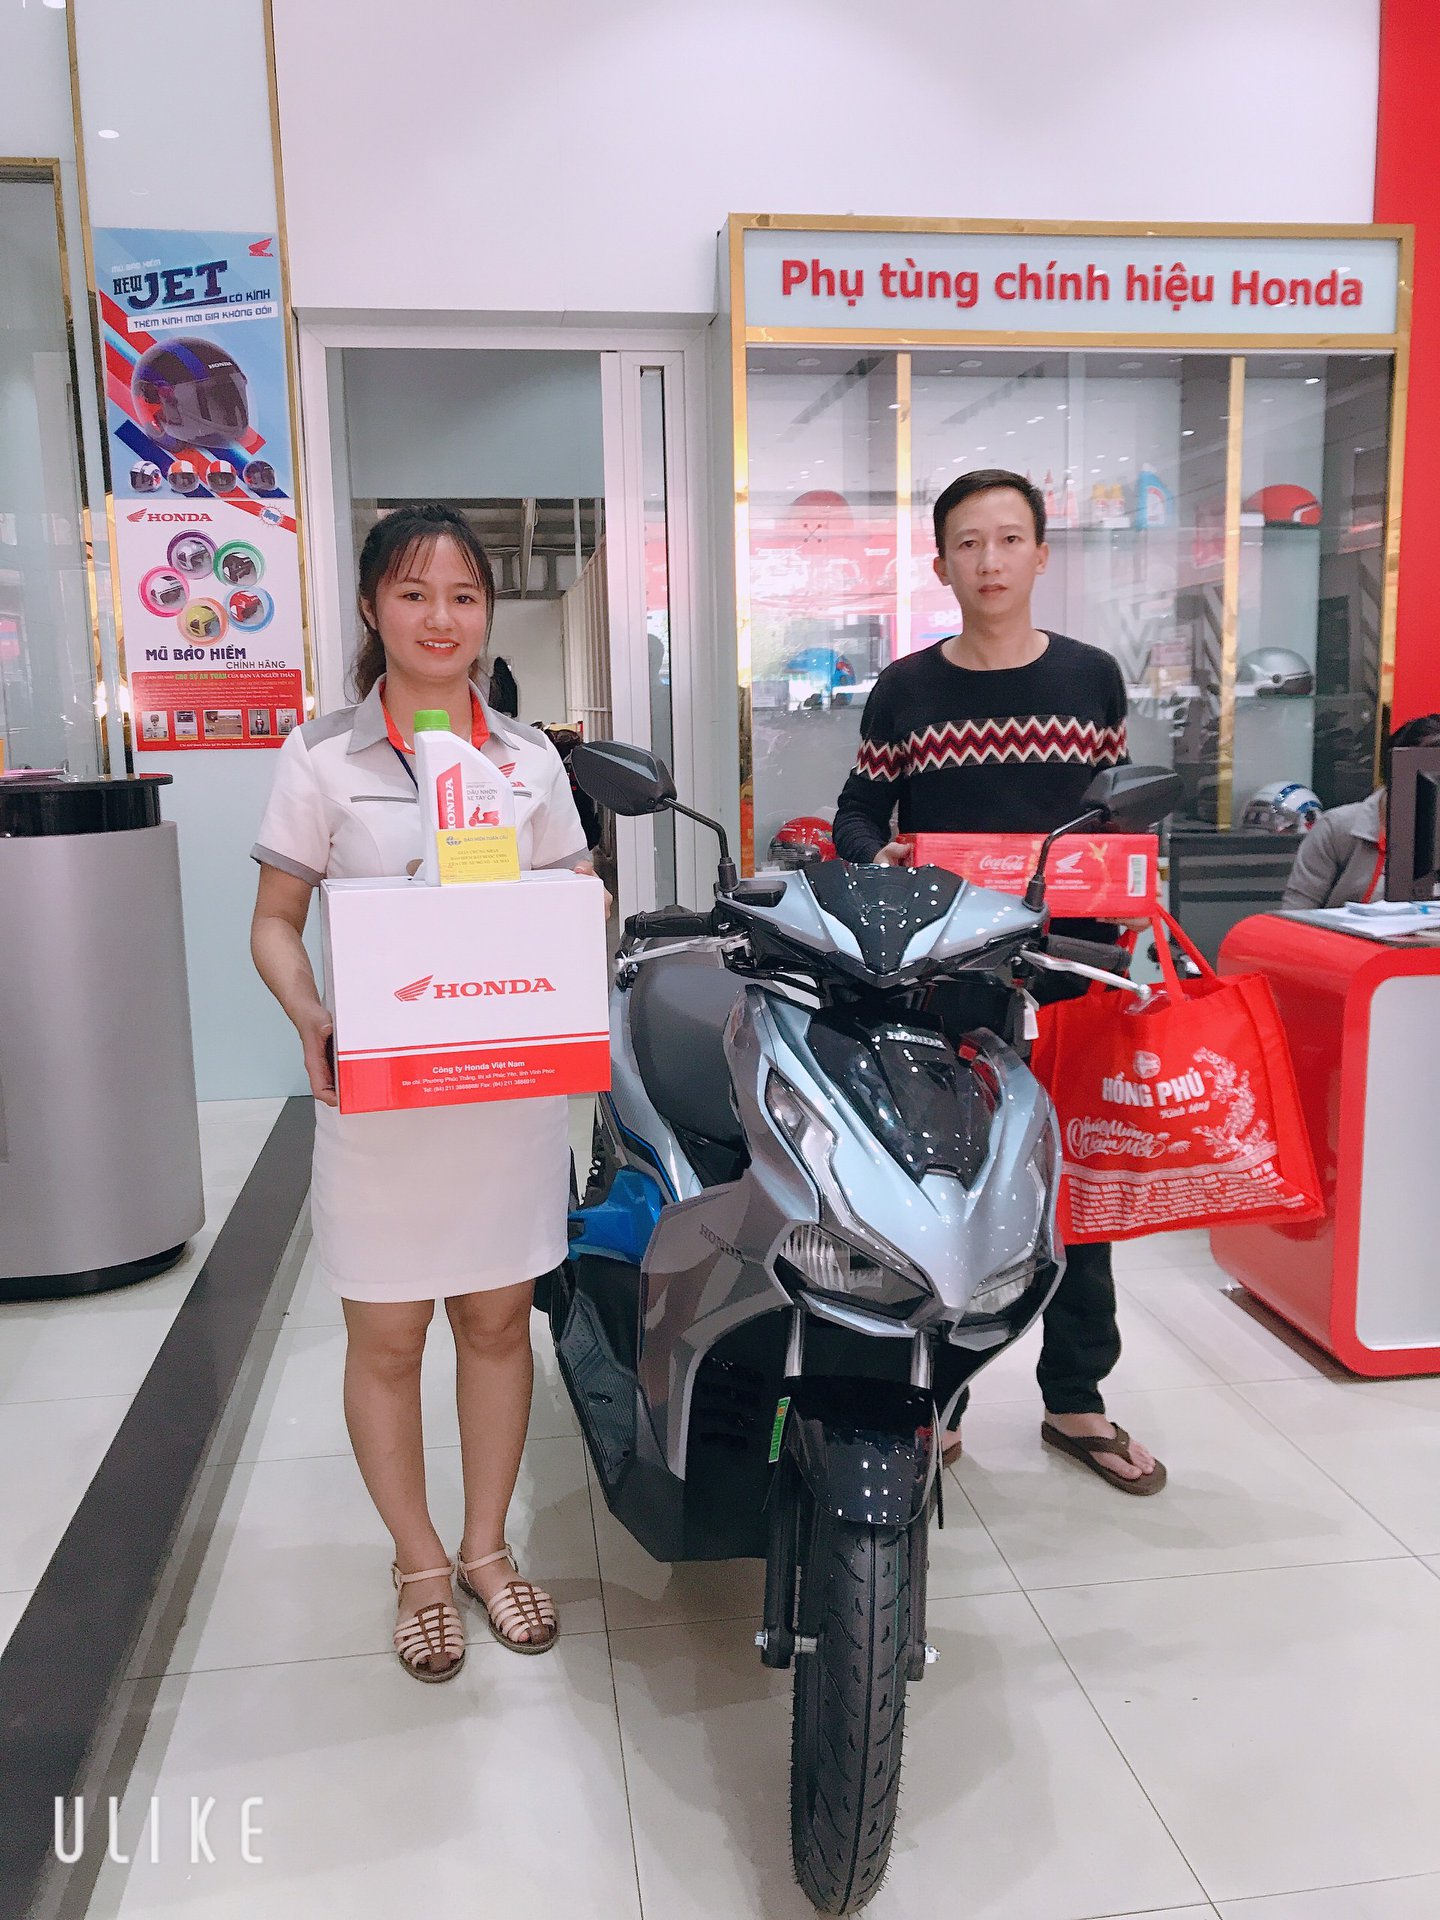 Top 5 Đại lý xe máy Honda uy tín và bán đúng giá nhất tỉnh Thừa Thiên Huế   toplistvn